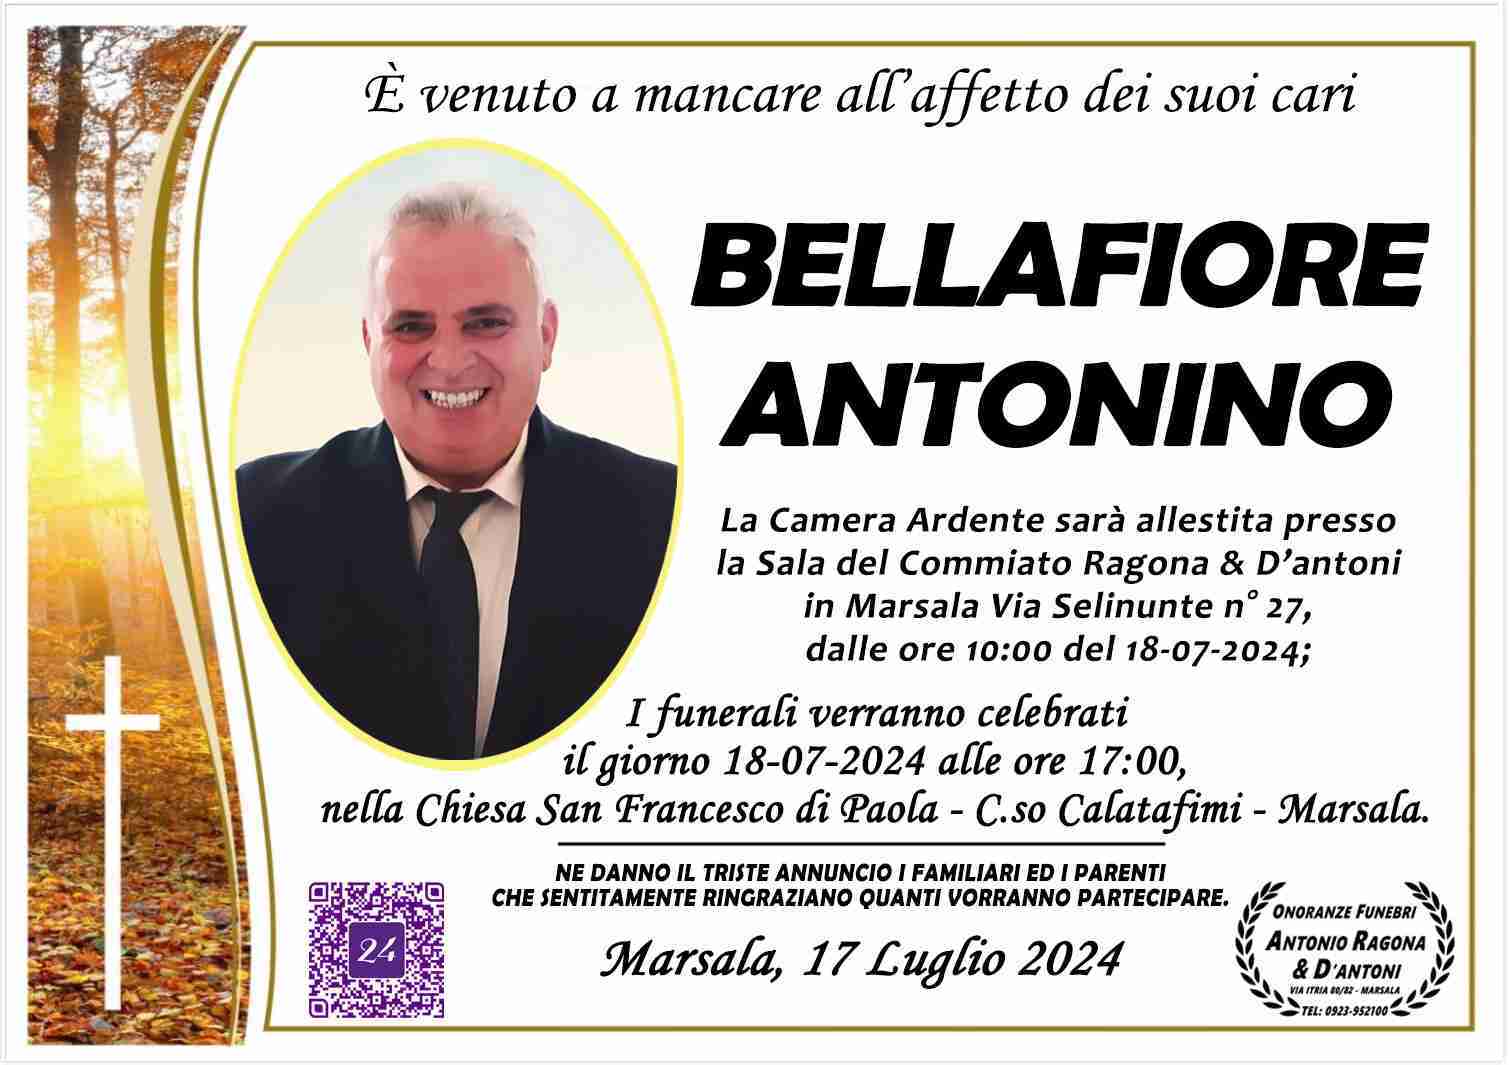 Antonino Bellafiore